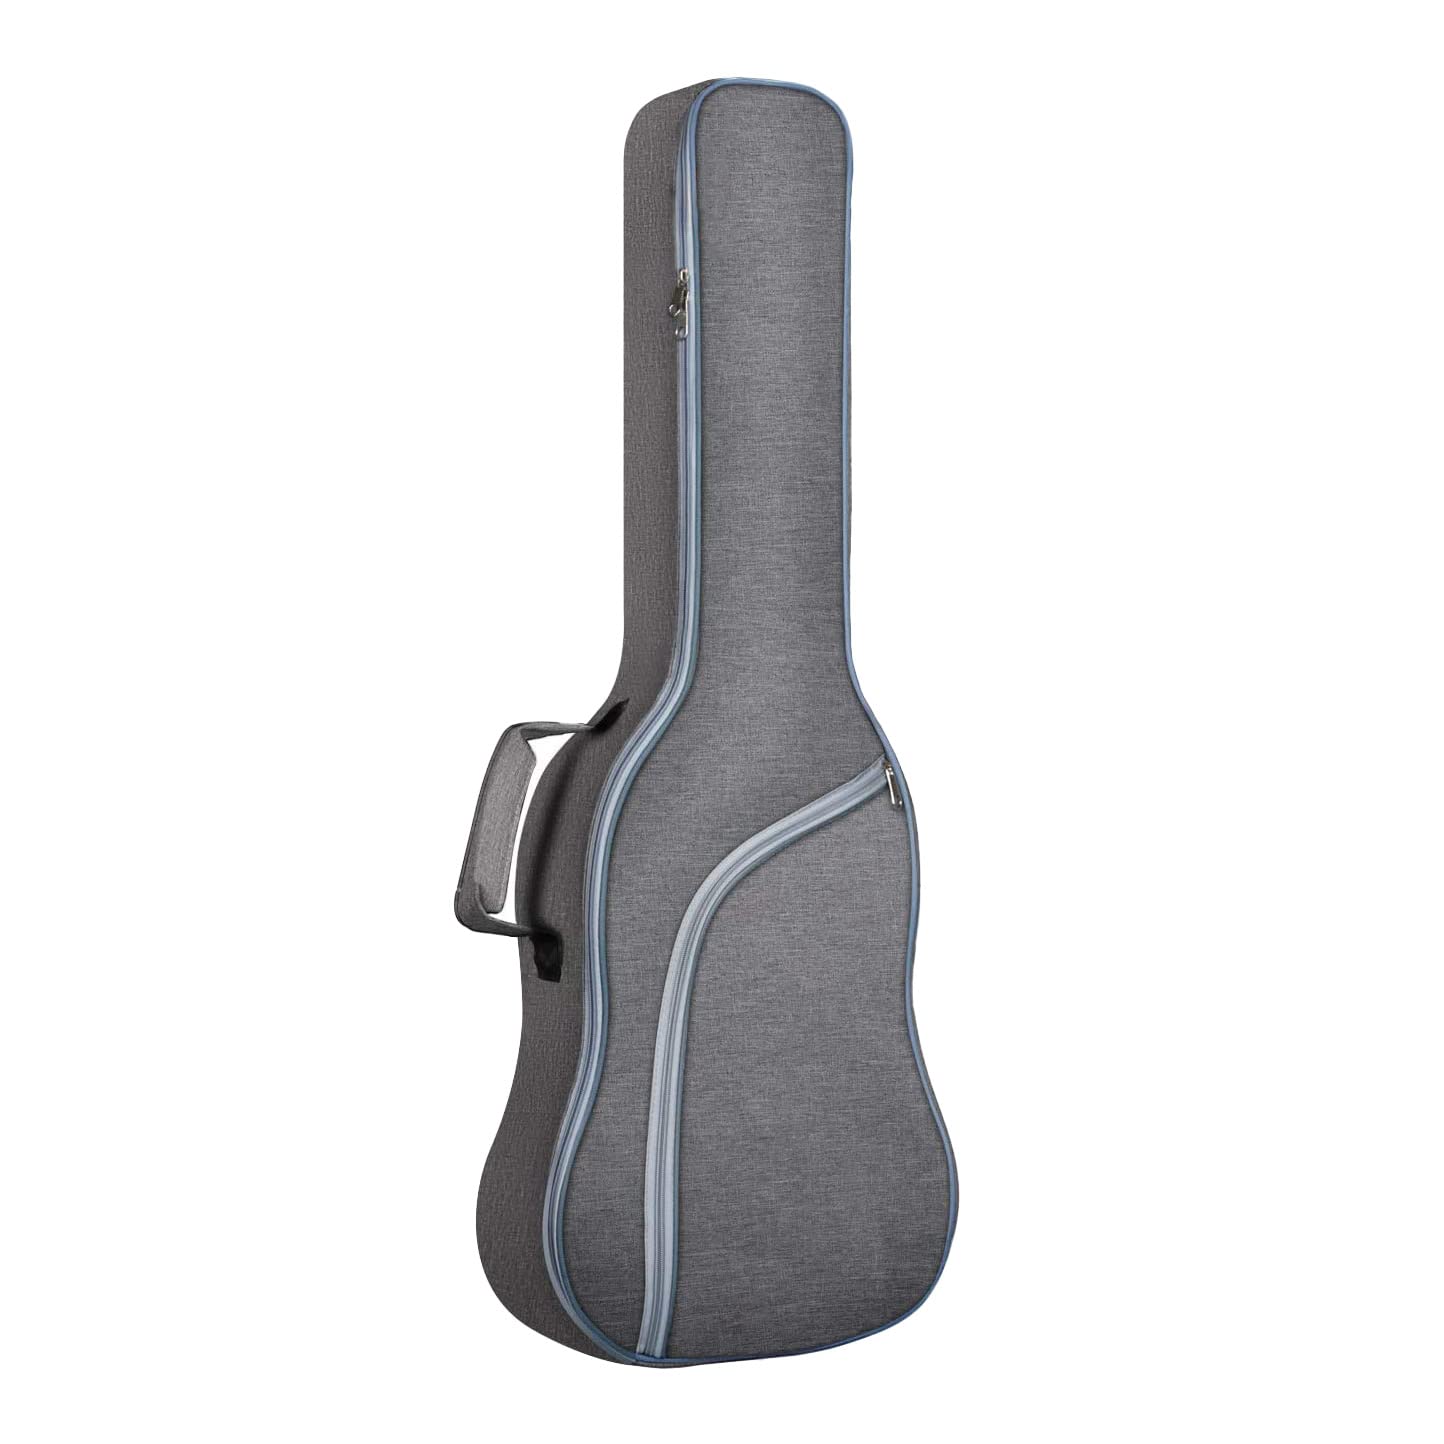 Melitt Tasche für E-Gitarre, 12 mm, gepolstert, verstellbare Schulter für E-Gitarre, klassische Gitarre und mehr